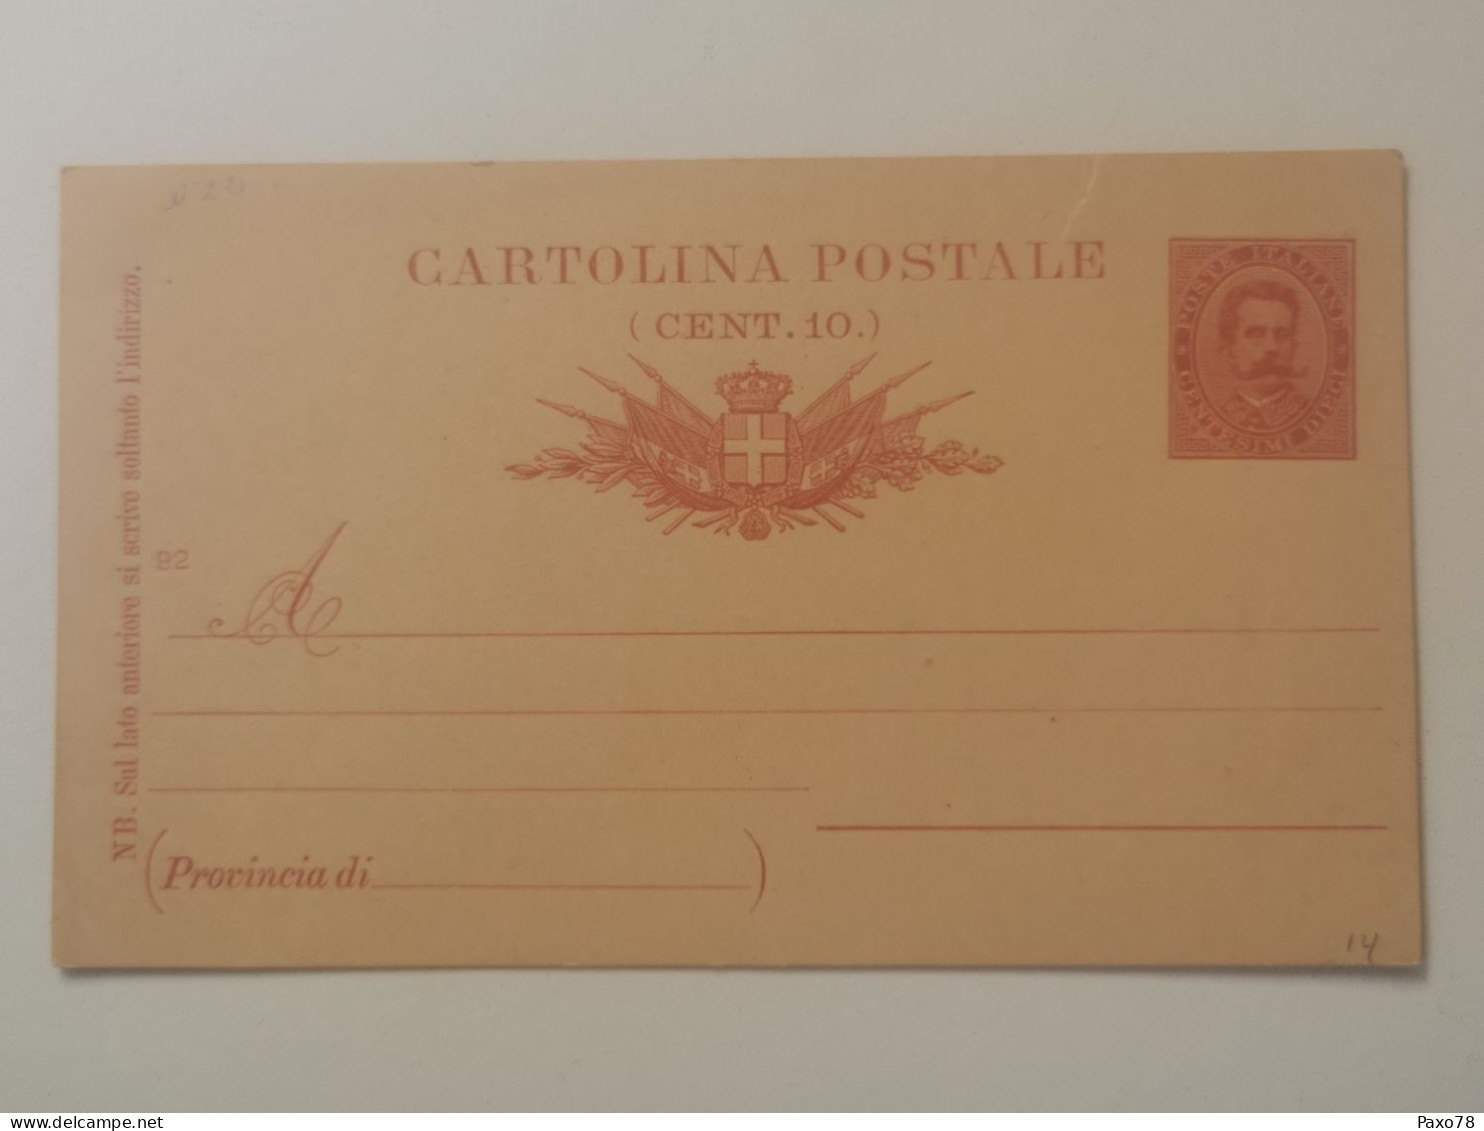 Cartolina Postale, 10C Vierge - Ganzsachen